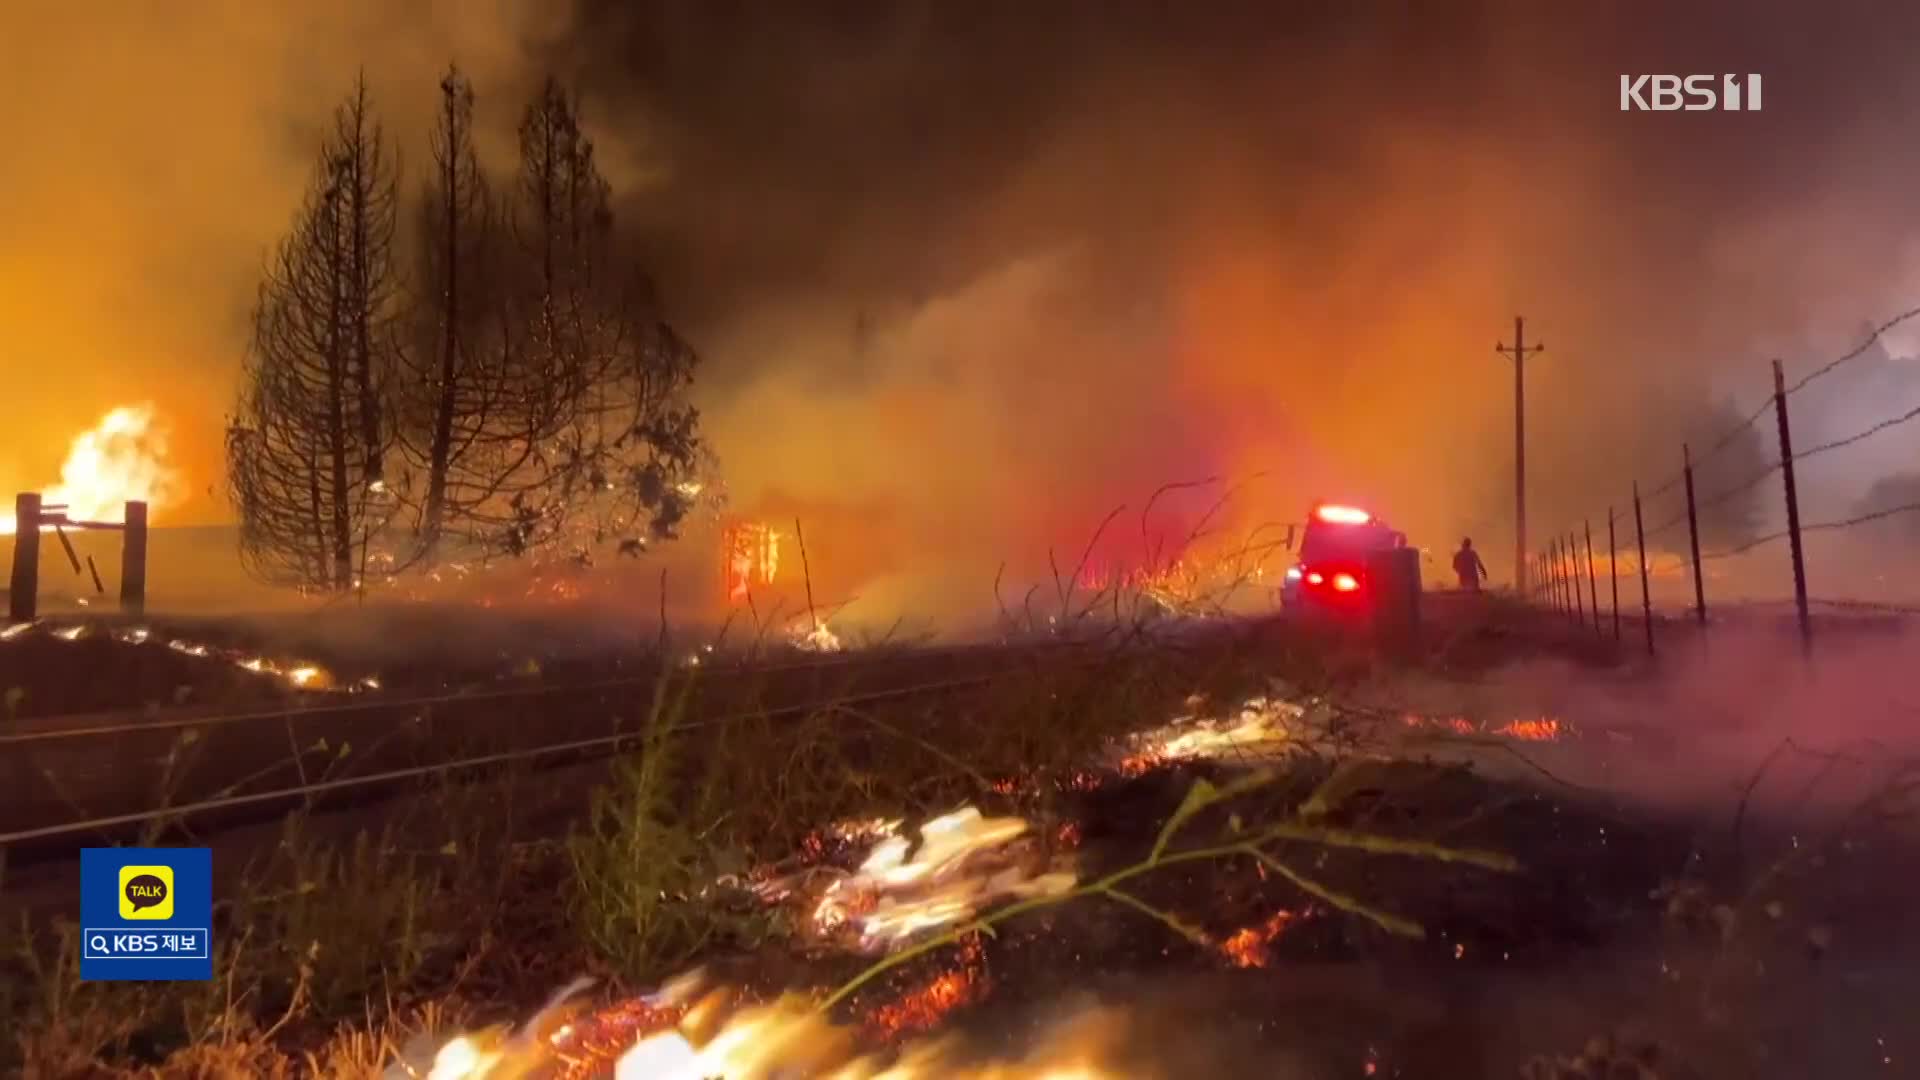 美 요세미티 공원 인근 산불 확산…여의도 면적 25배 태워